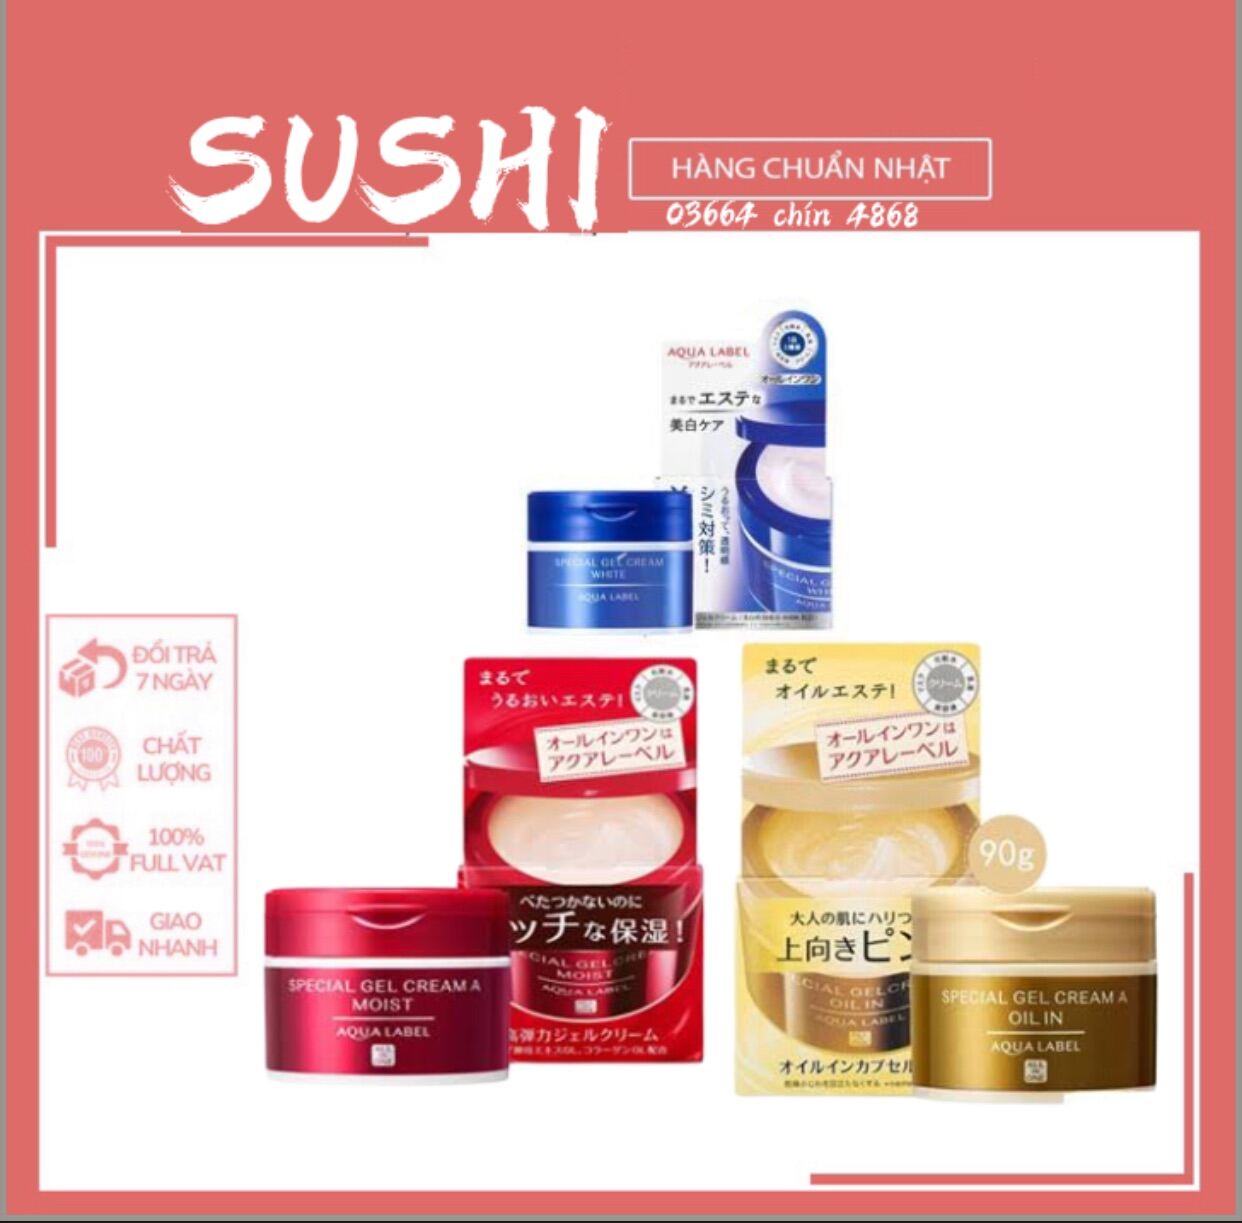 Kem dưỡng da Shiseido Aqualabel 5 trong 1 Nhật bản 90g mẫu mới giá cạnh tranh - H.E.E COSMETIC